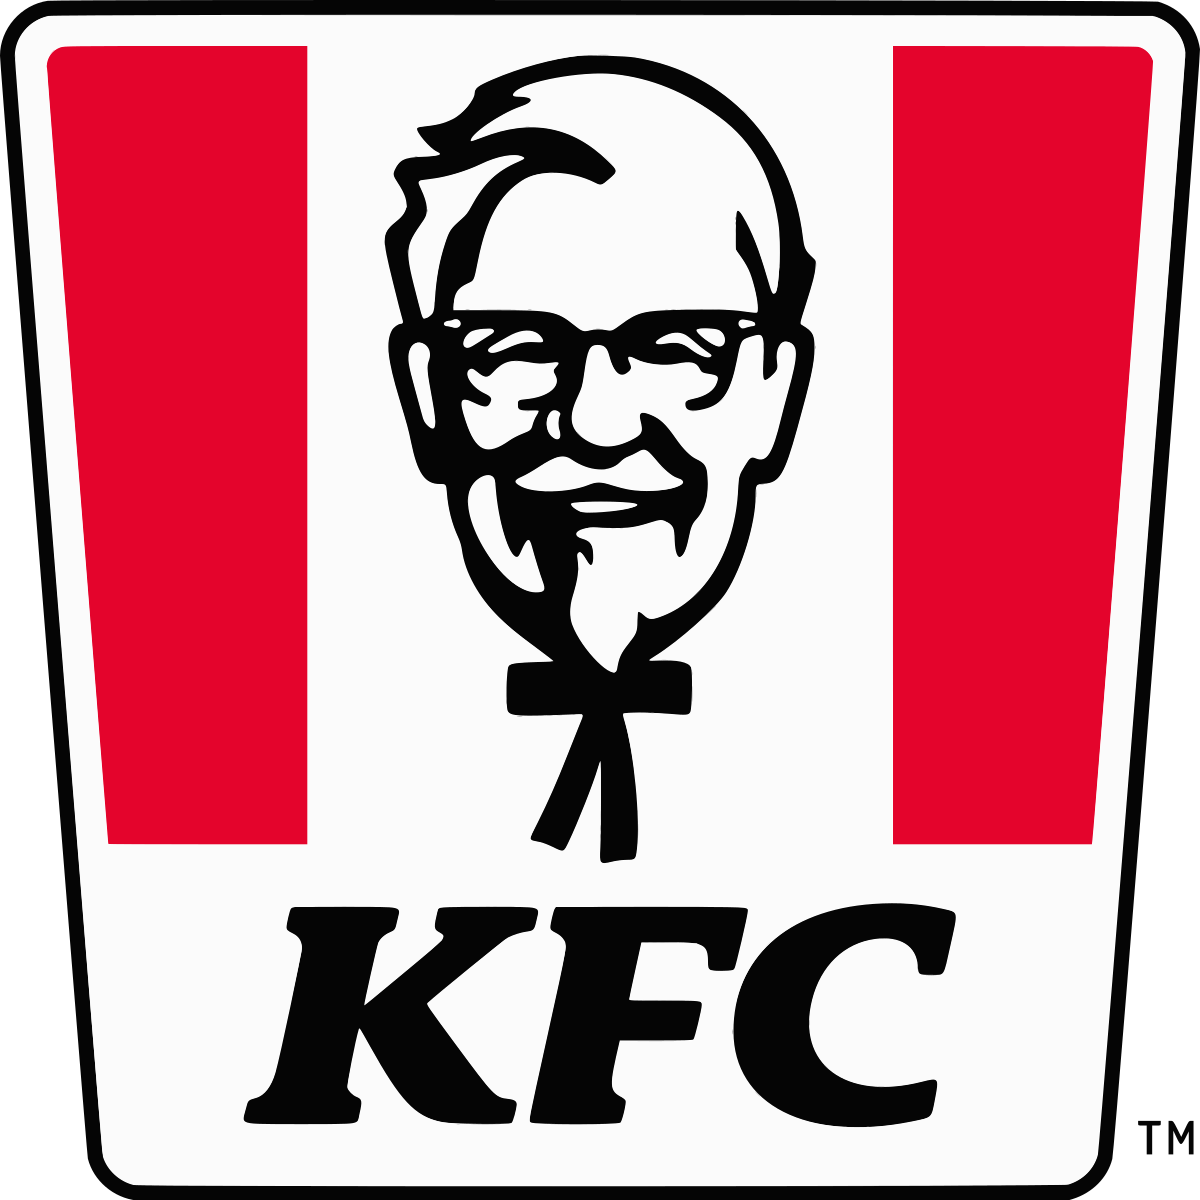 KFC логотип PNG изображения фон